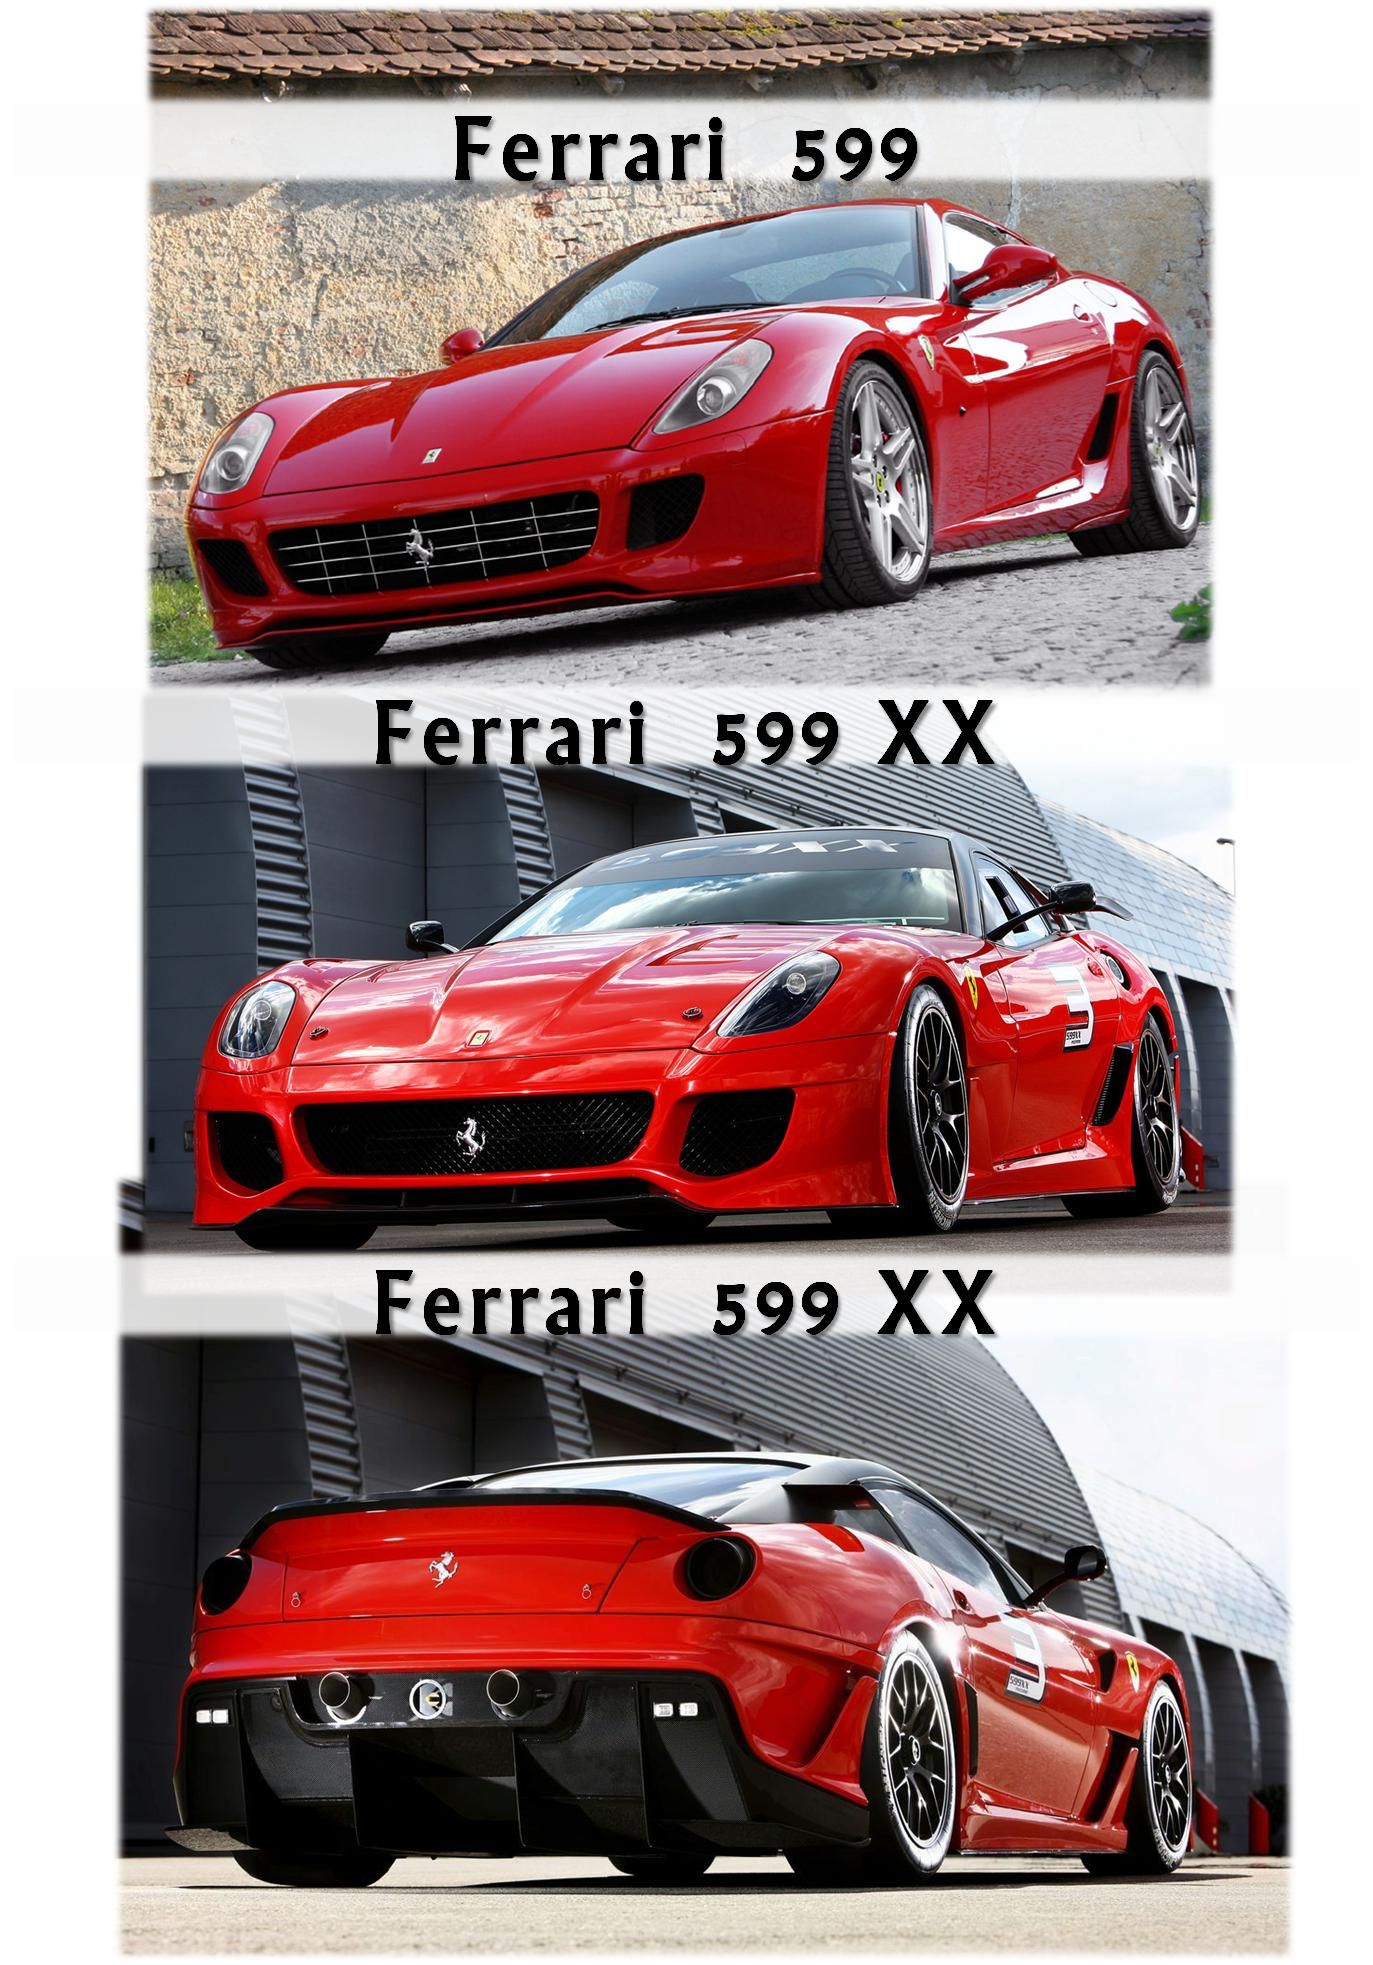 2015 Ferrari F12XX - TopSpeed Rendering